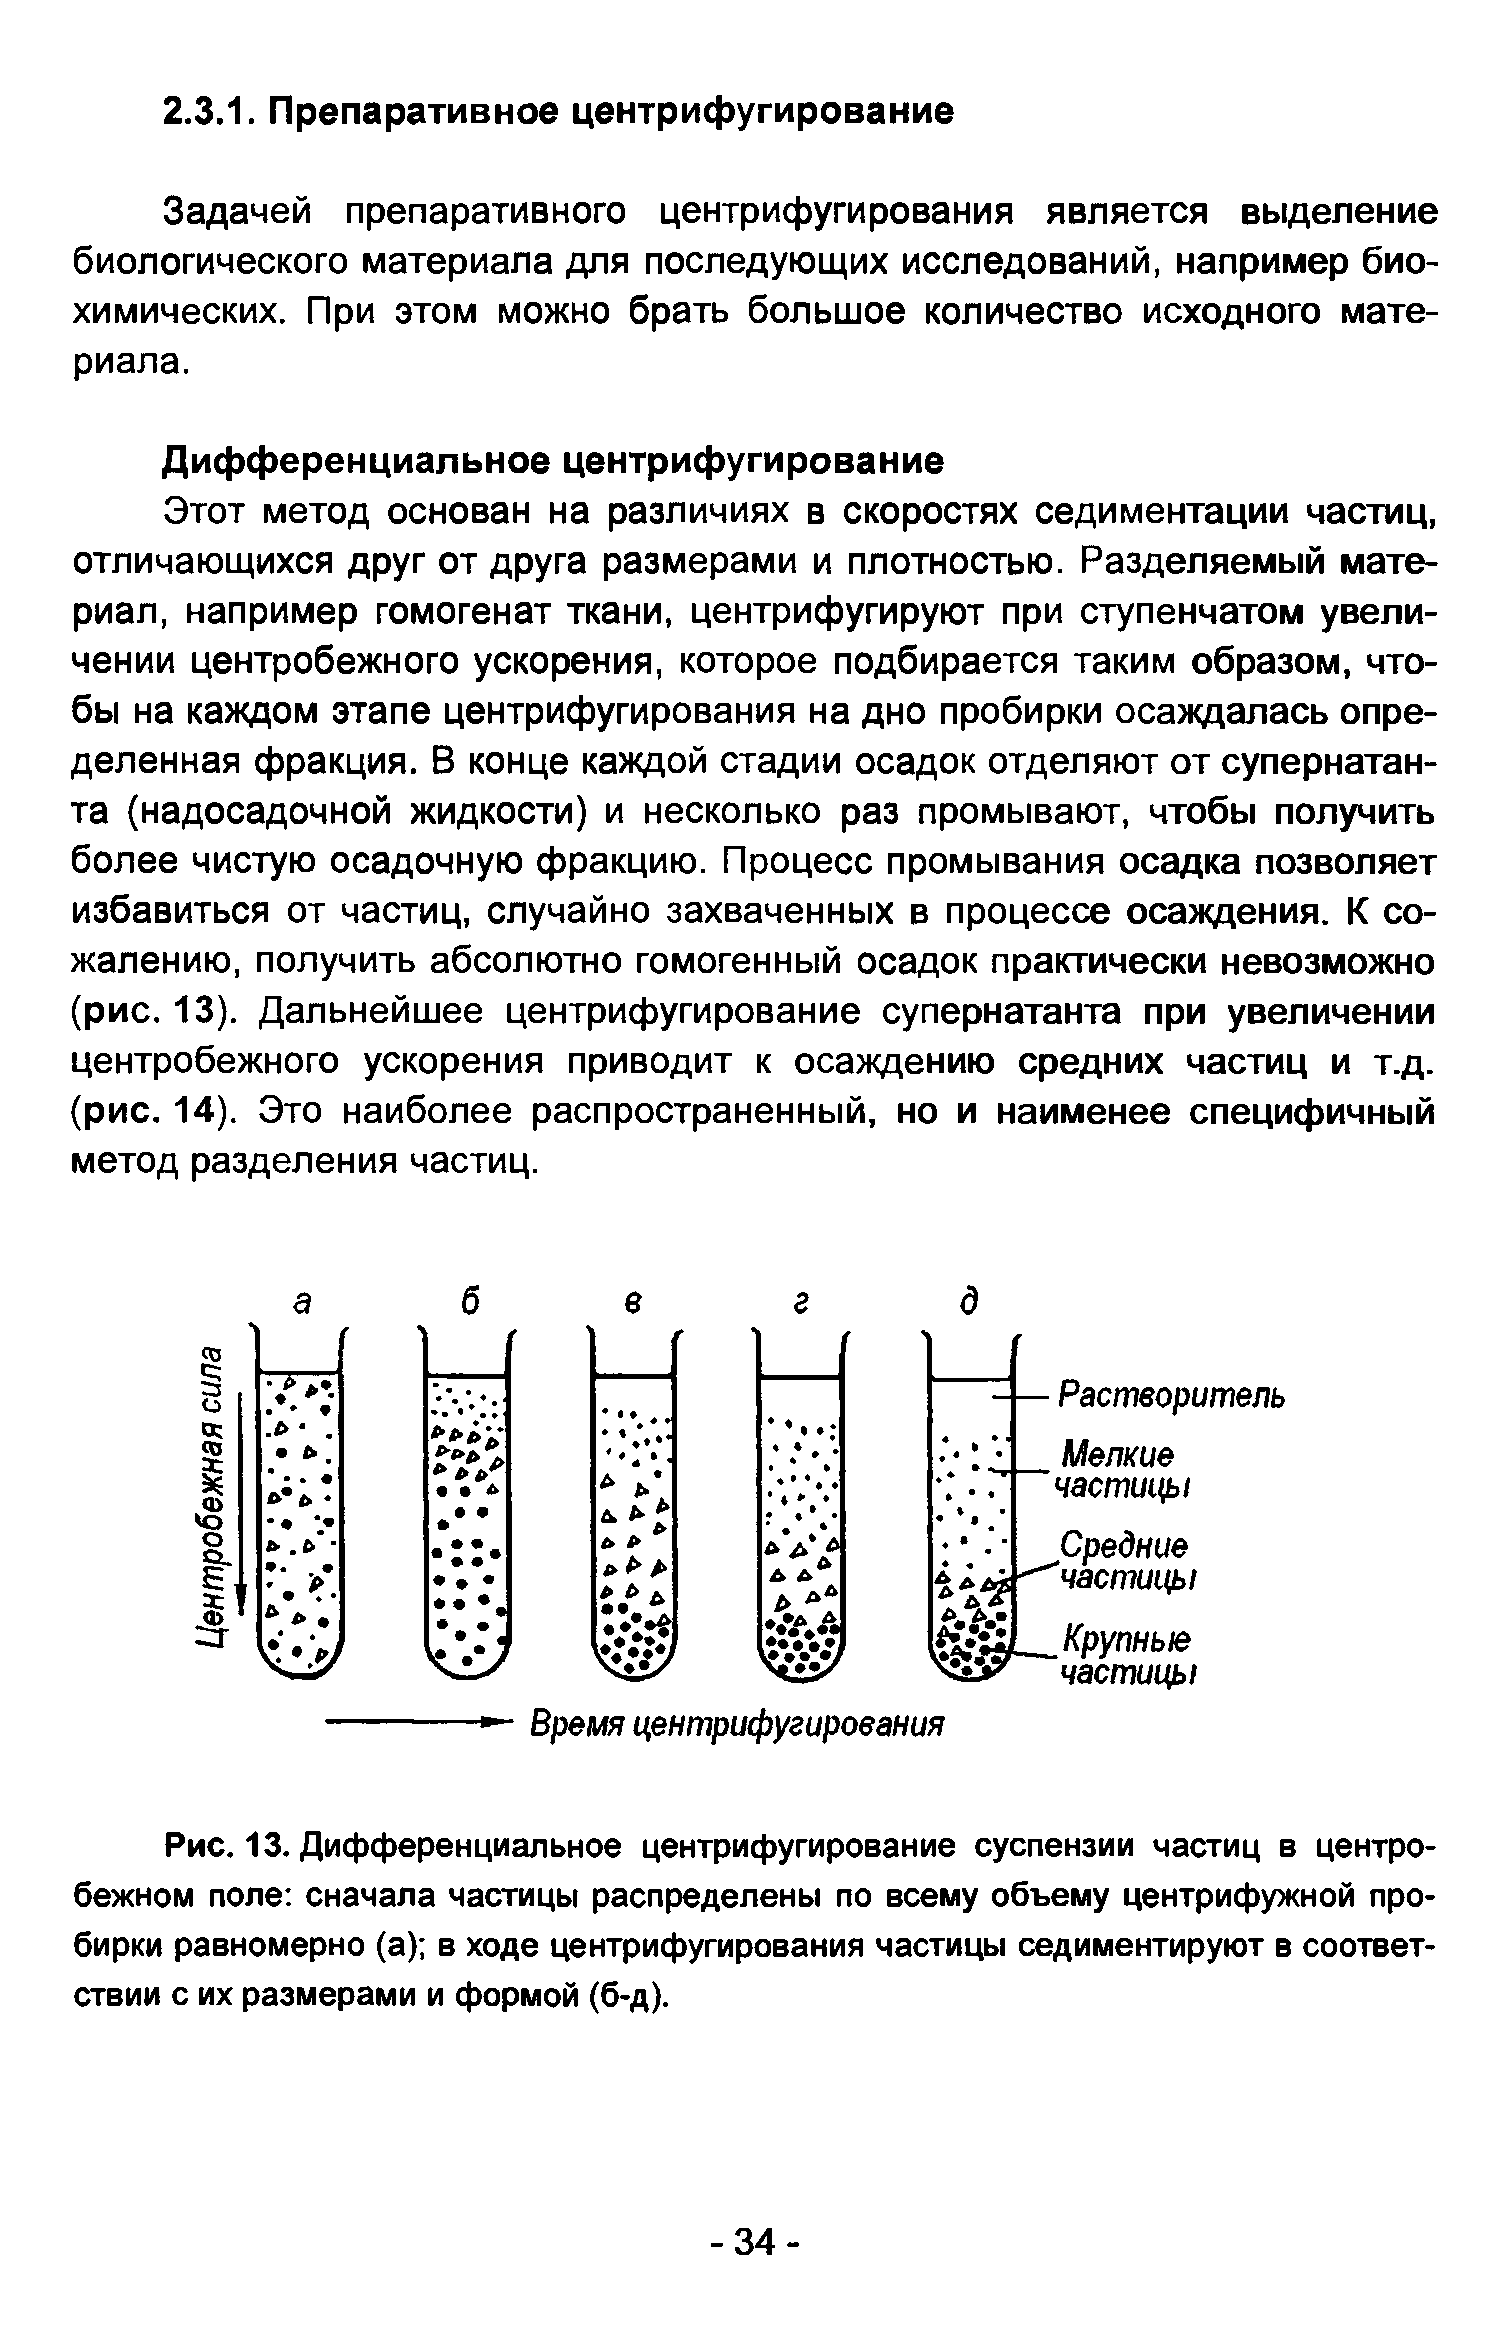 Рис. 13. Дифференциальное центрифугирование суспензии частиц в центробежном поле сначала частицы распределены по всему объему центрифужной пробирки равномерно (а) в ходе центрифугирования частицы седиментируют в соответствии с их размерами и формой (б-д).